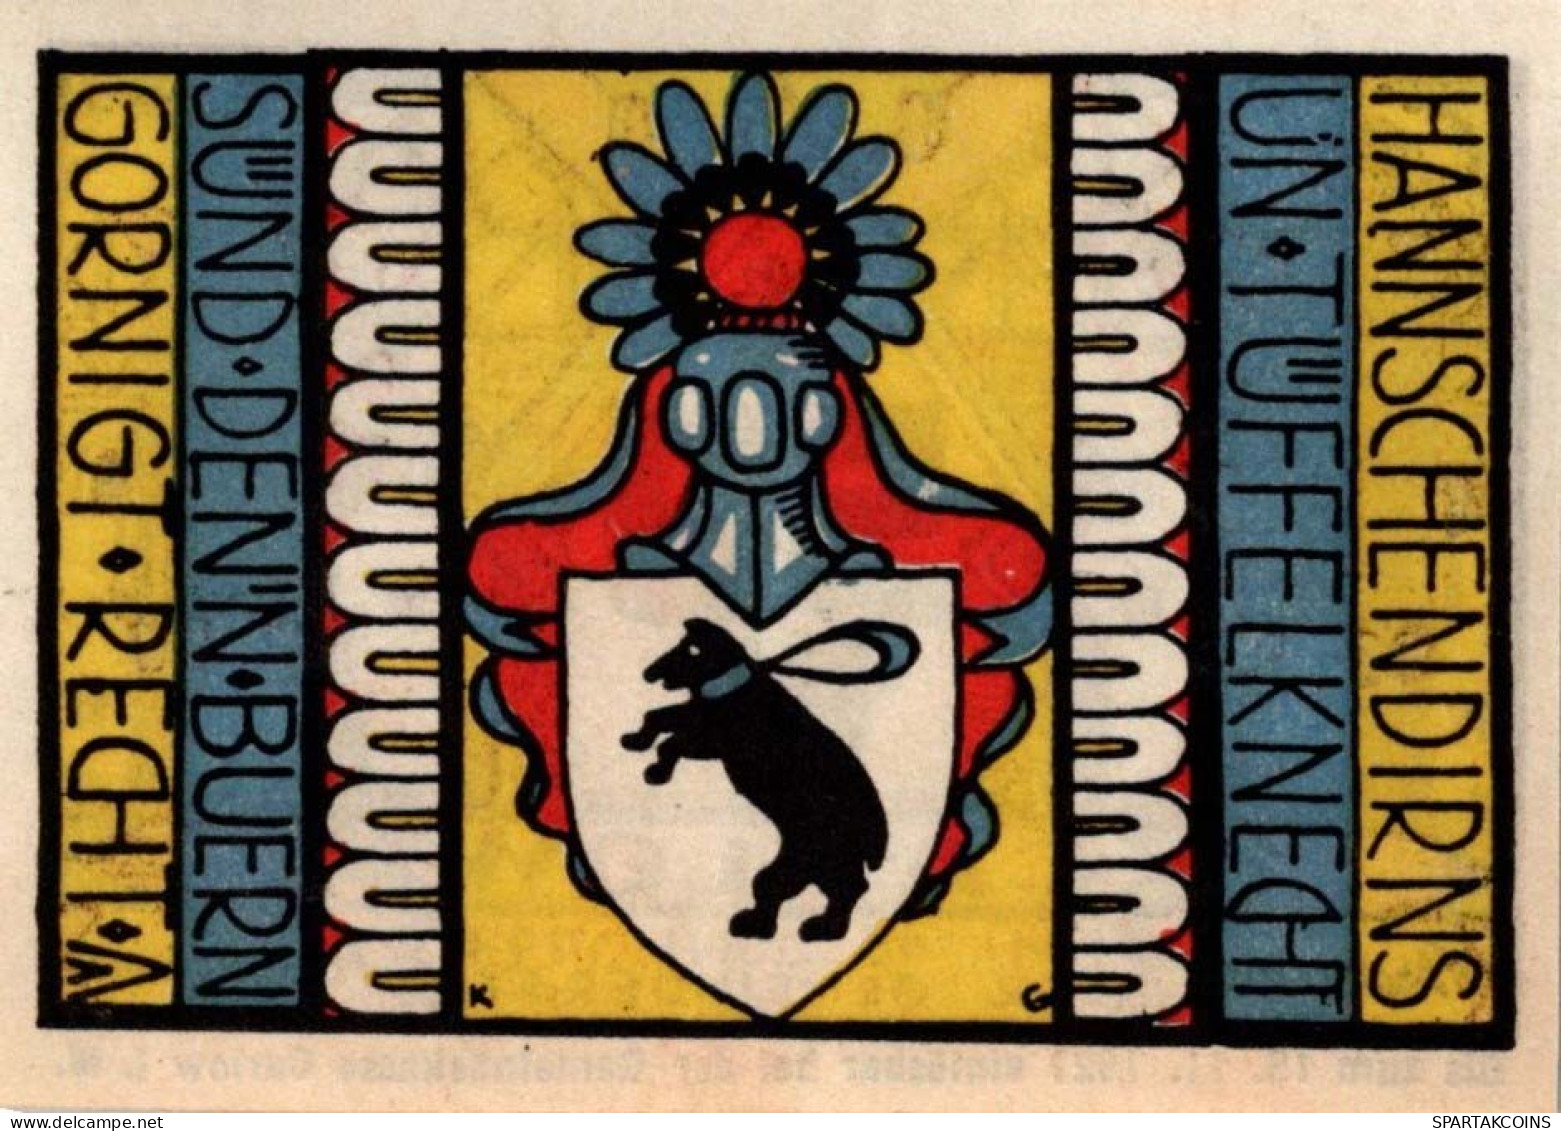 50 PFENNIG 1921 Stadt CARLOW Mecklenburg-Strelitz UNC DEUTSCHLAND Notgeld #PI090 - [11] Local Banknote Issues